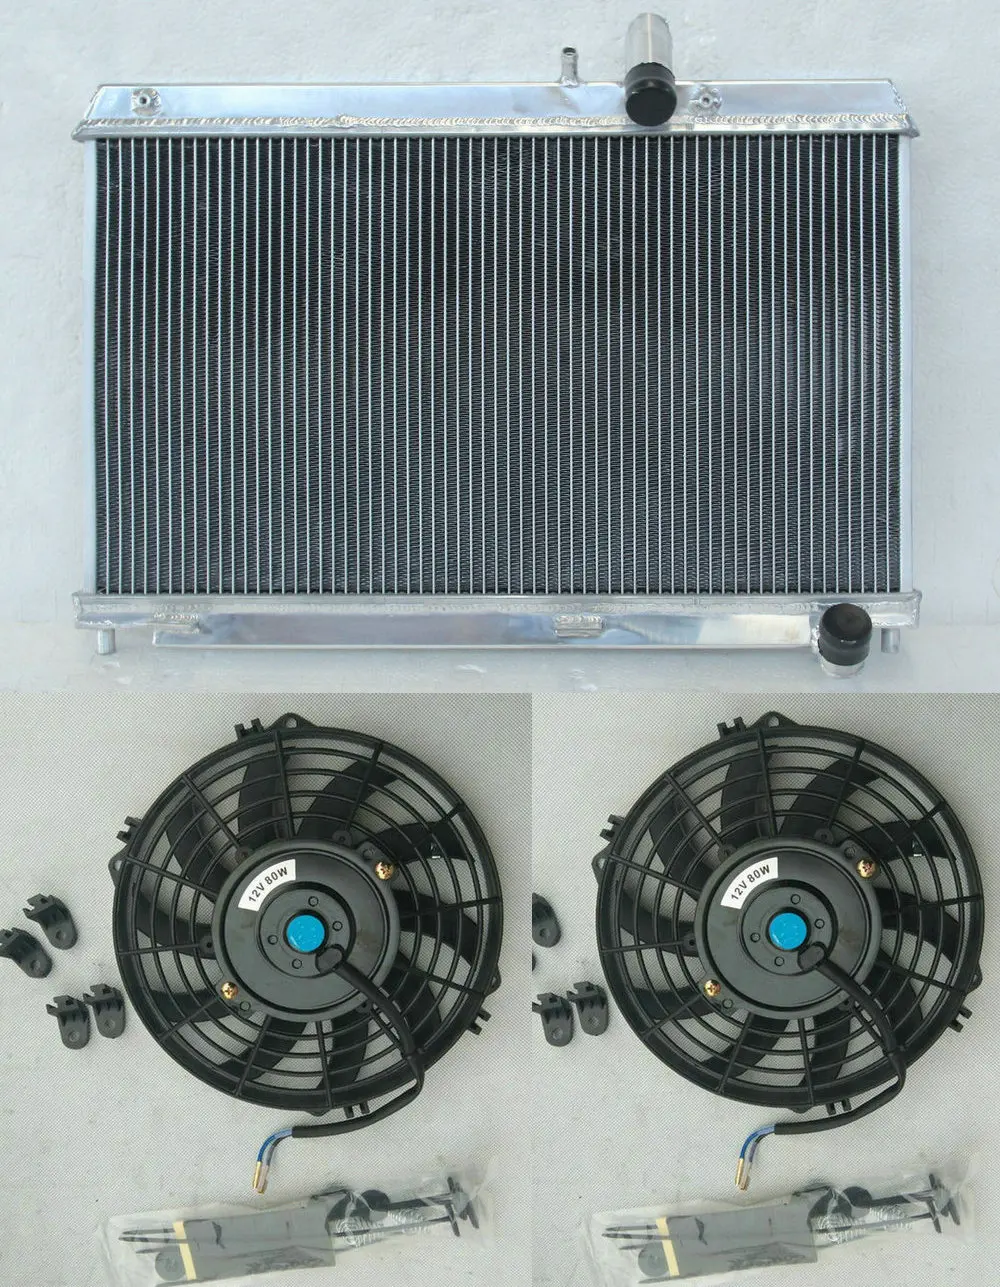 Алюминиевый радиатор для Mazda RX8 RX-8 FE Series 1 13B MSP SE17 Coupe Renesis 4 порта поворотный 1.3л бензин 2003-2008 MT& вентиляторы - Цвет: Radiator And Fan